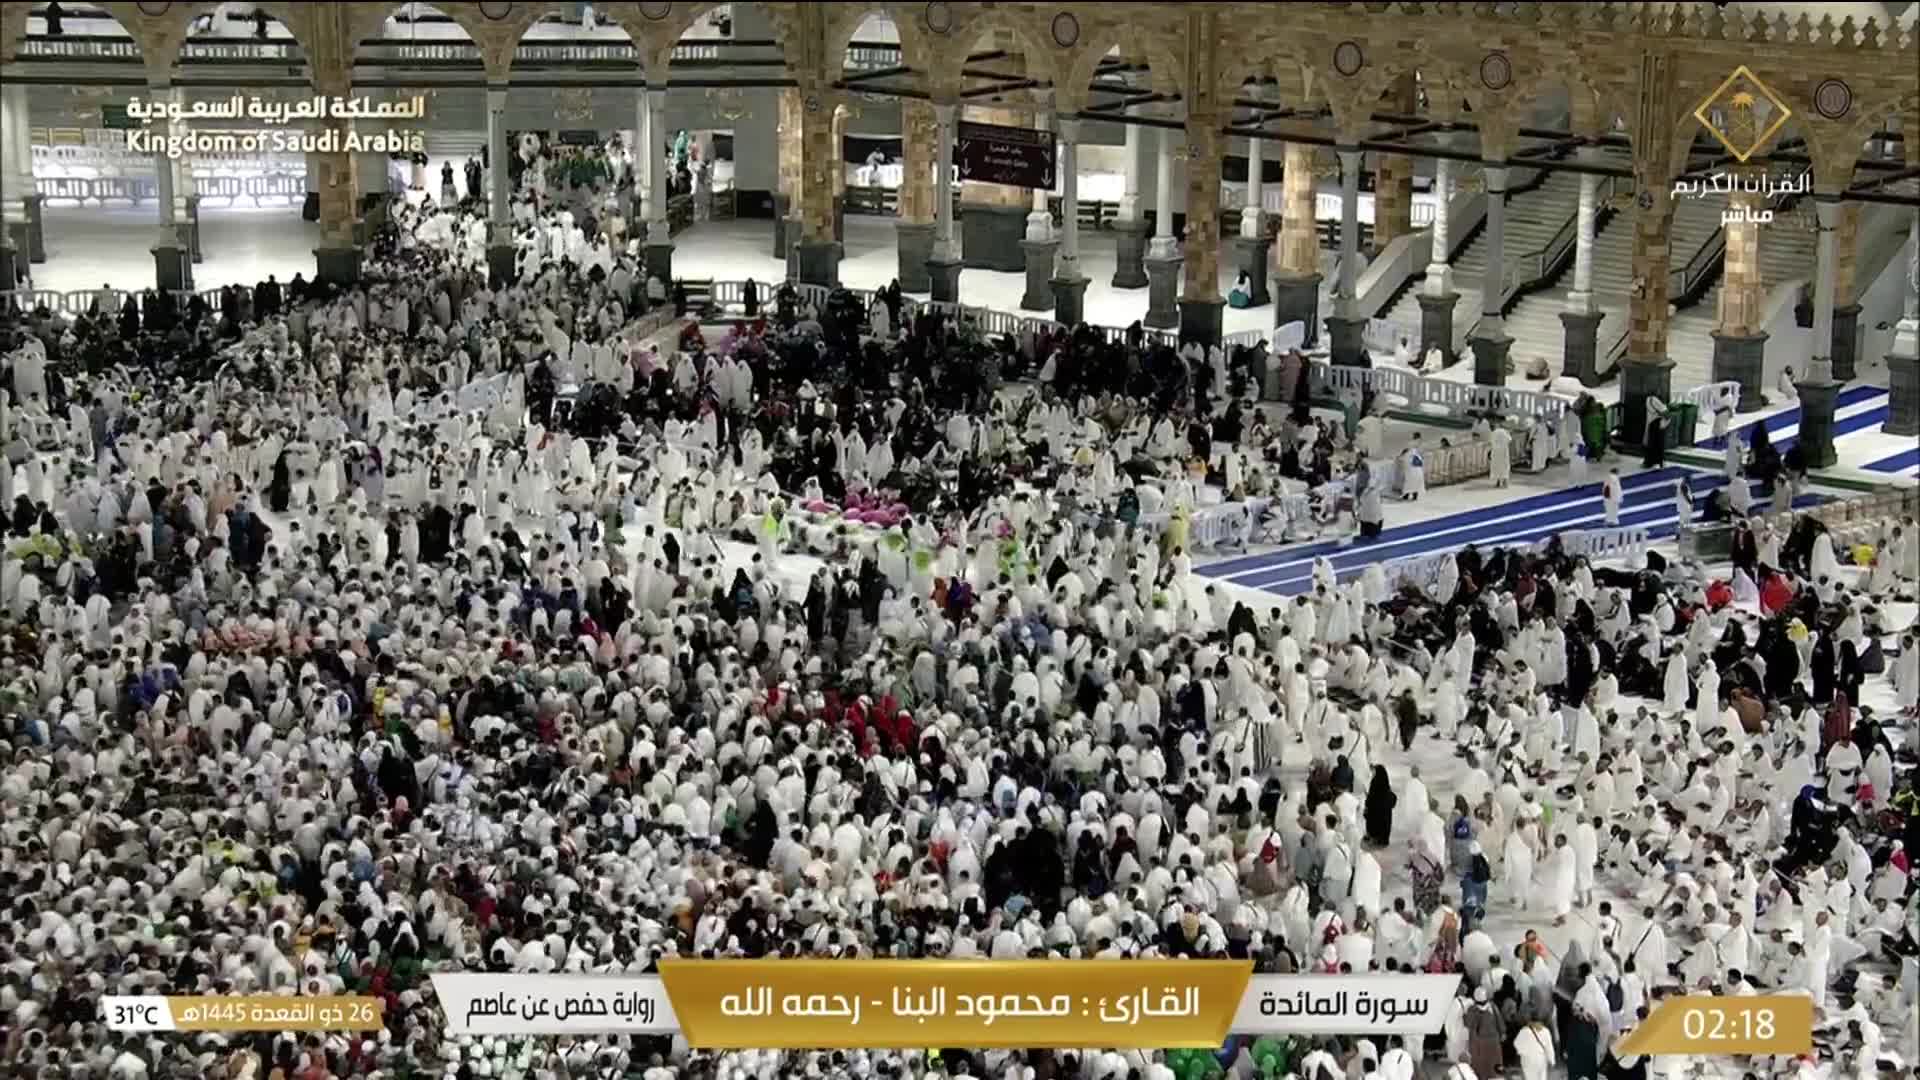 Mecca Thu. 02:36